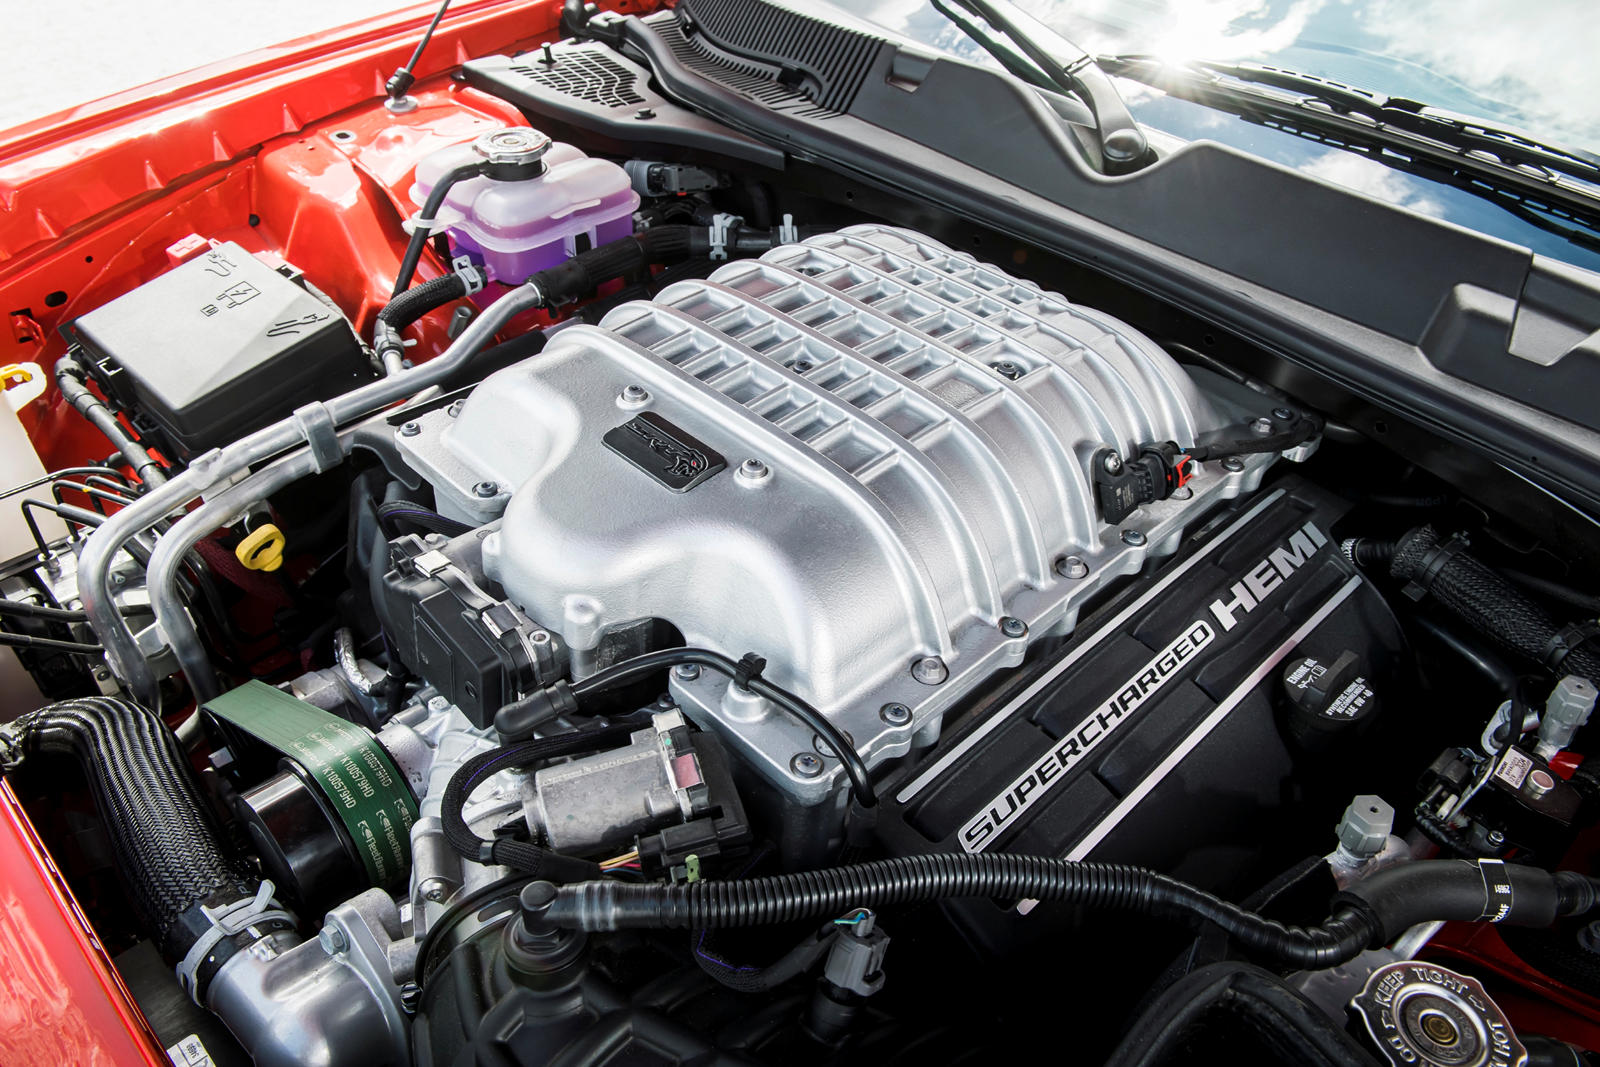 V8 engine